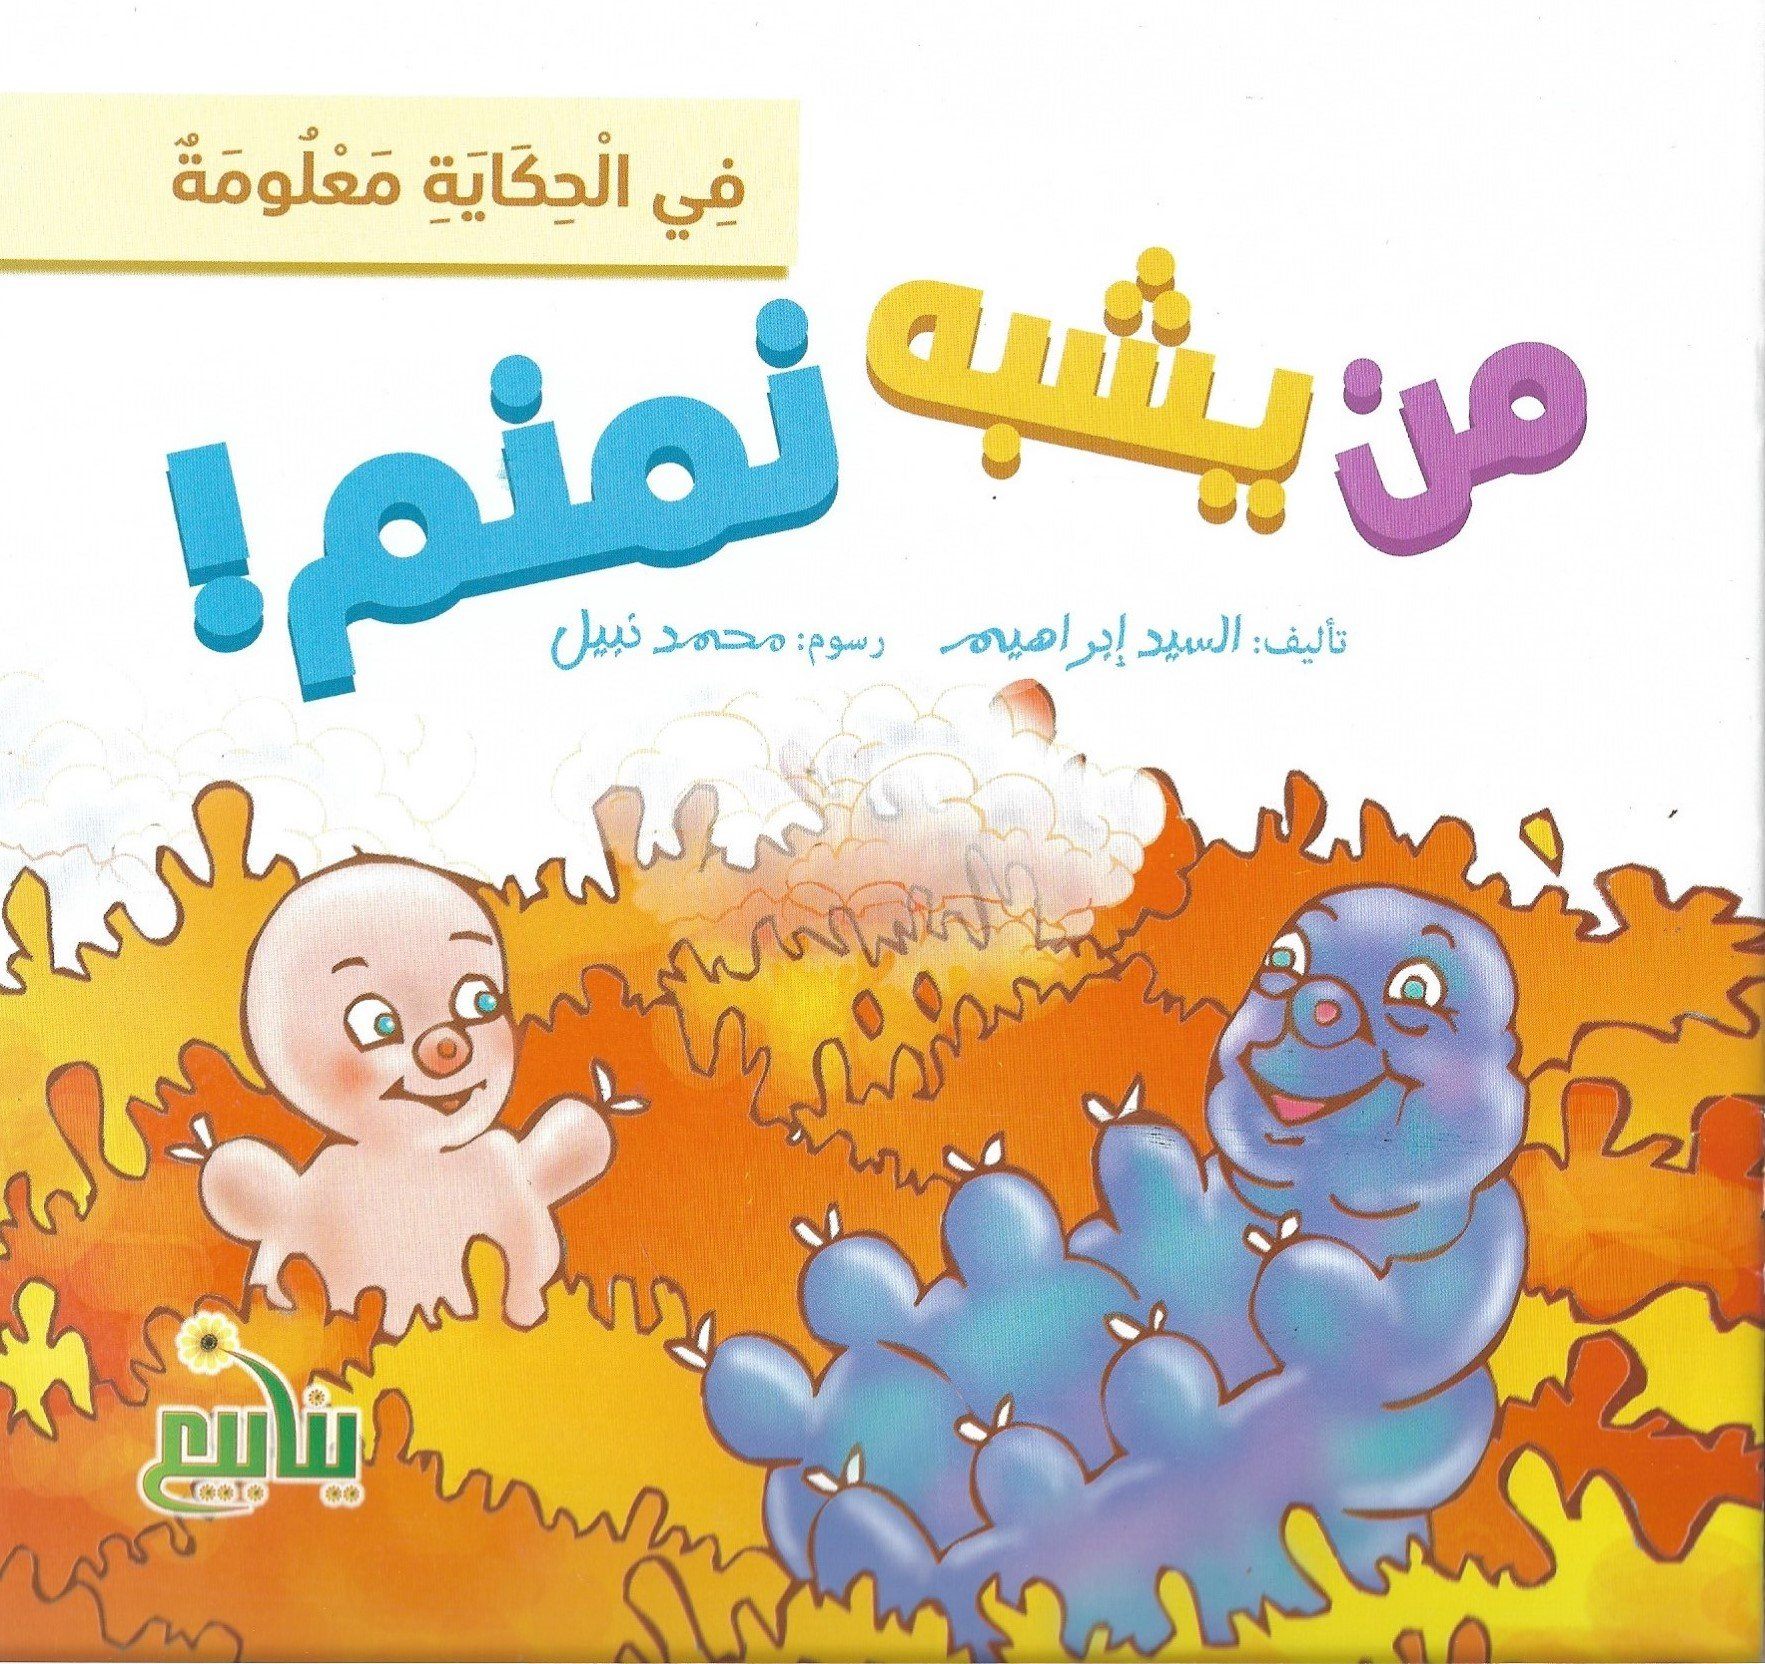 سلسلة في الحكاية معلومة كتب أطفال السيد إبراهيم